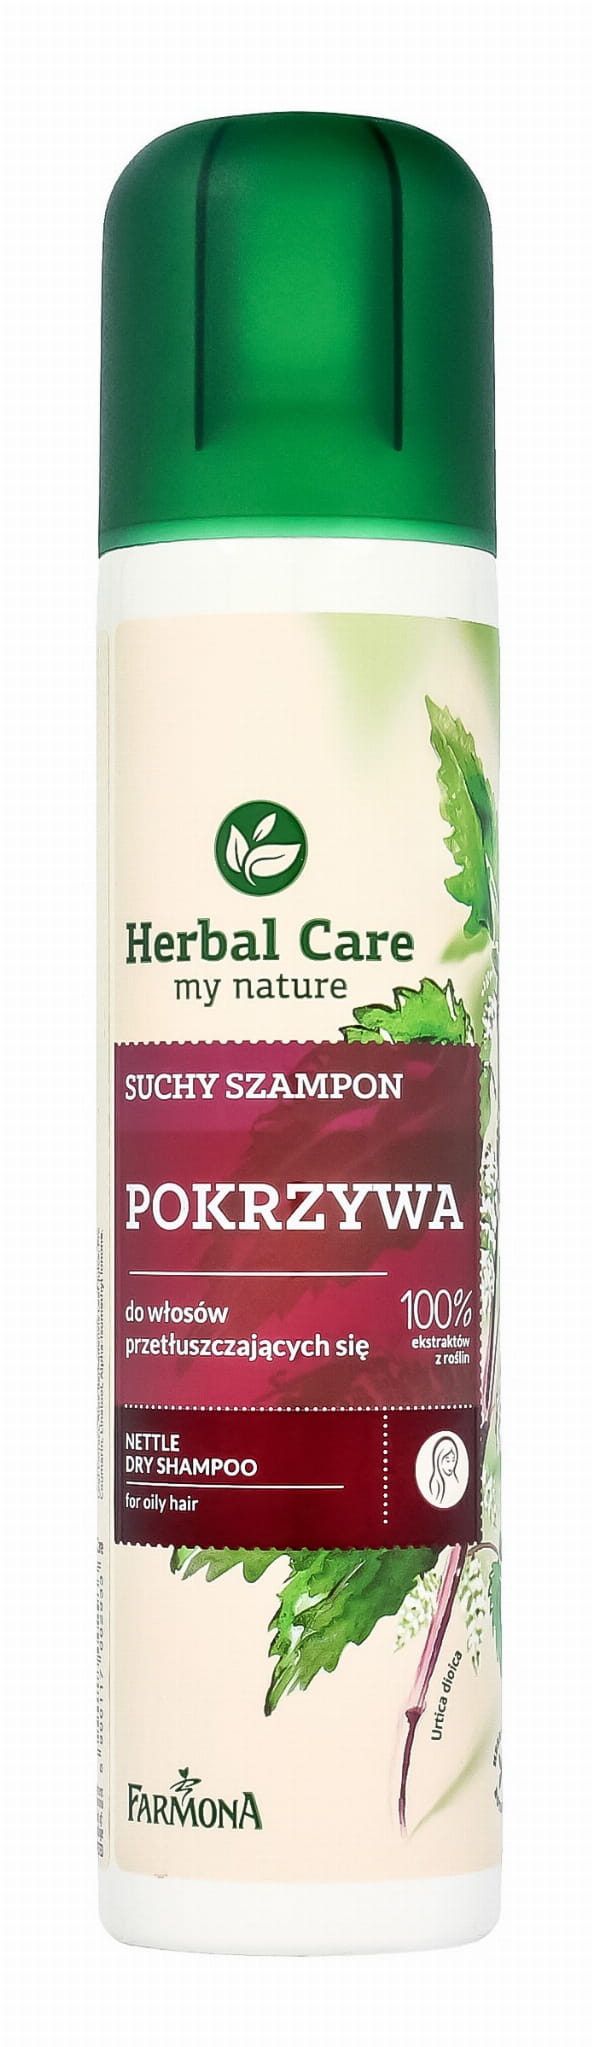 herbal care suchy szampon pokrzywa